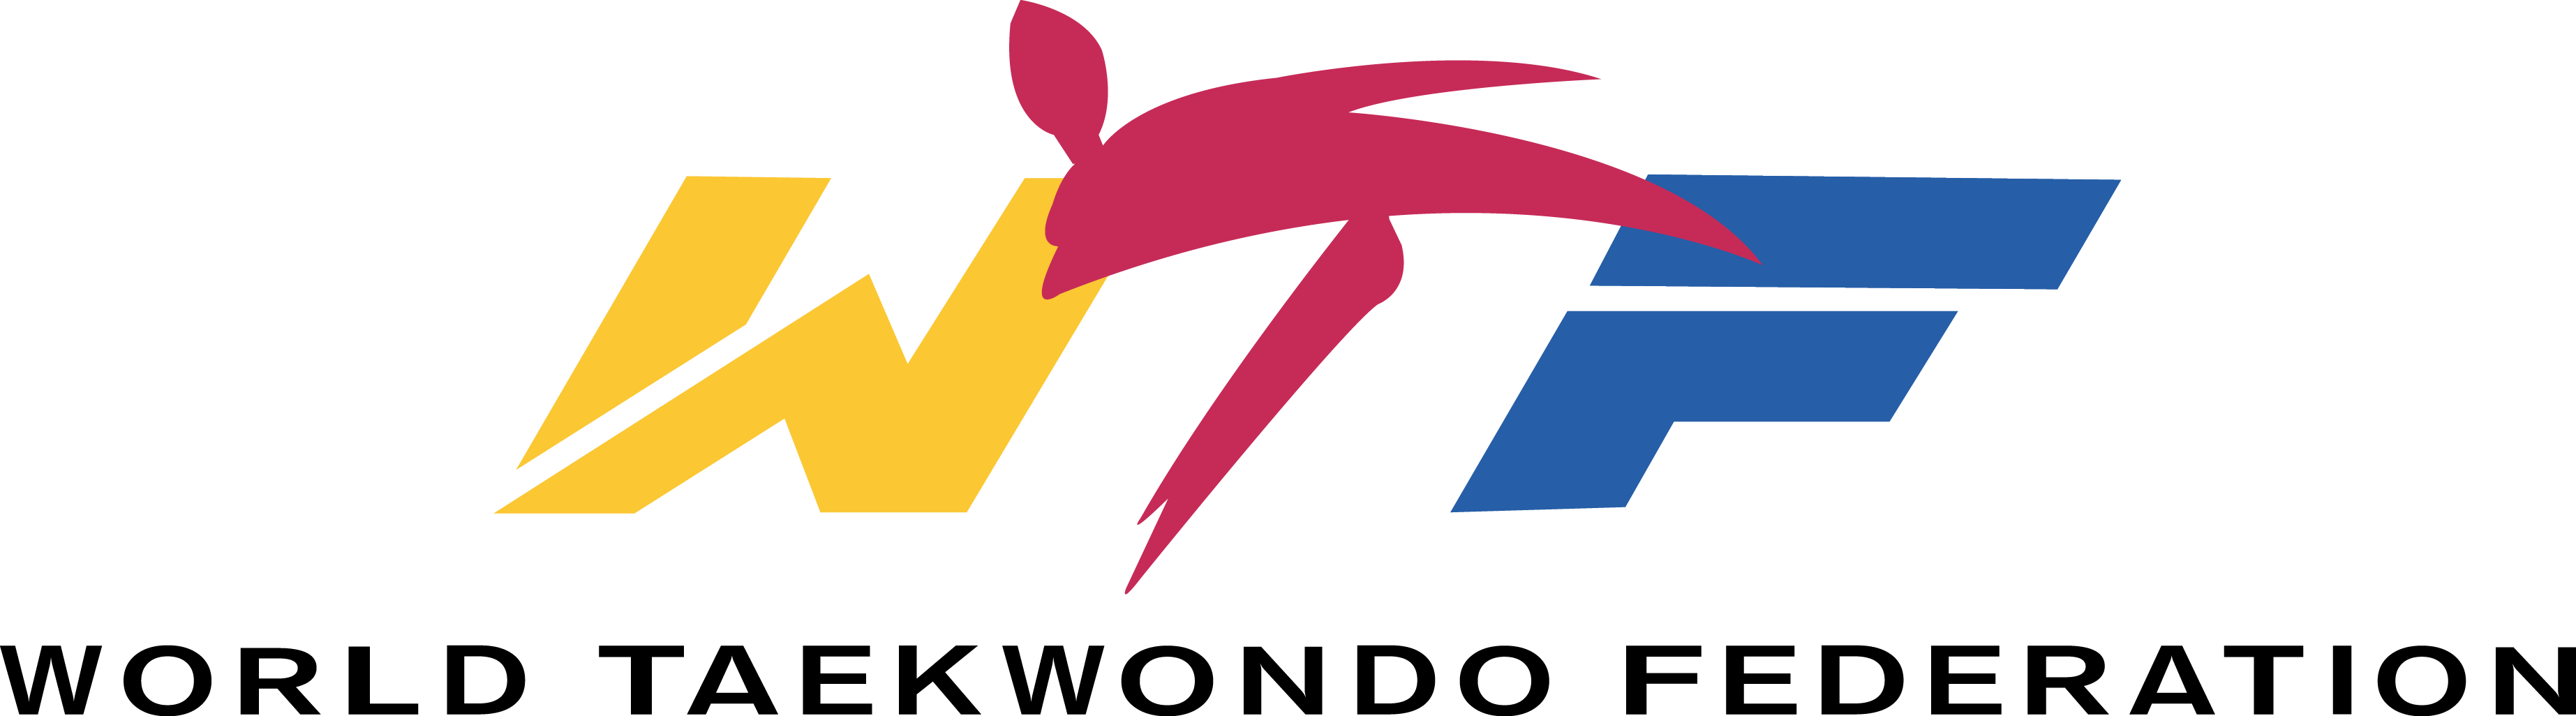 World Taekwondo Federation (WTF) Logo [wtf.org] png